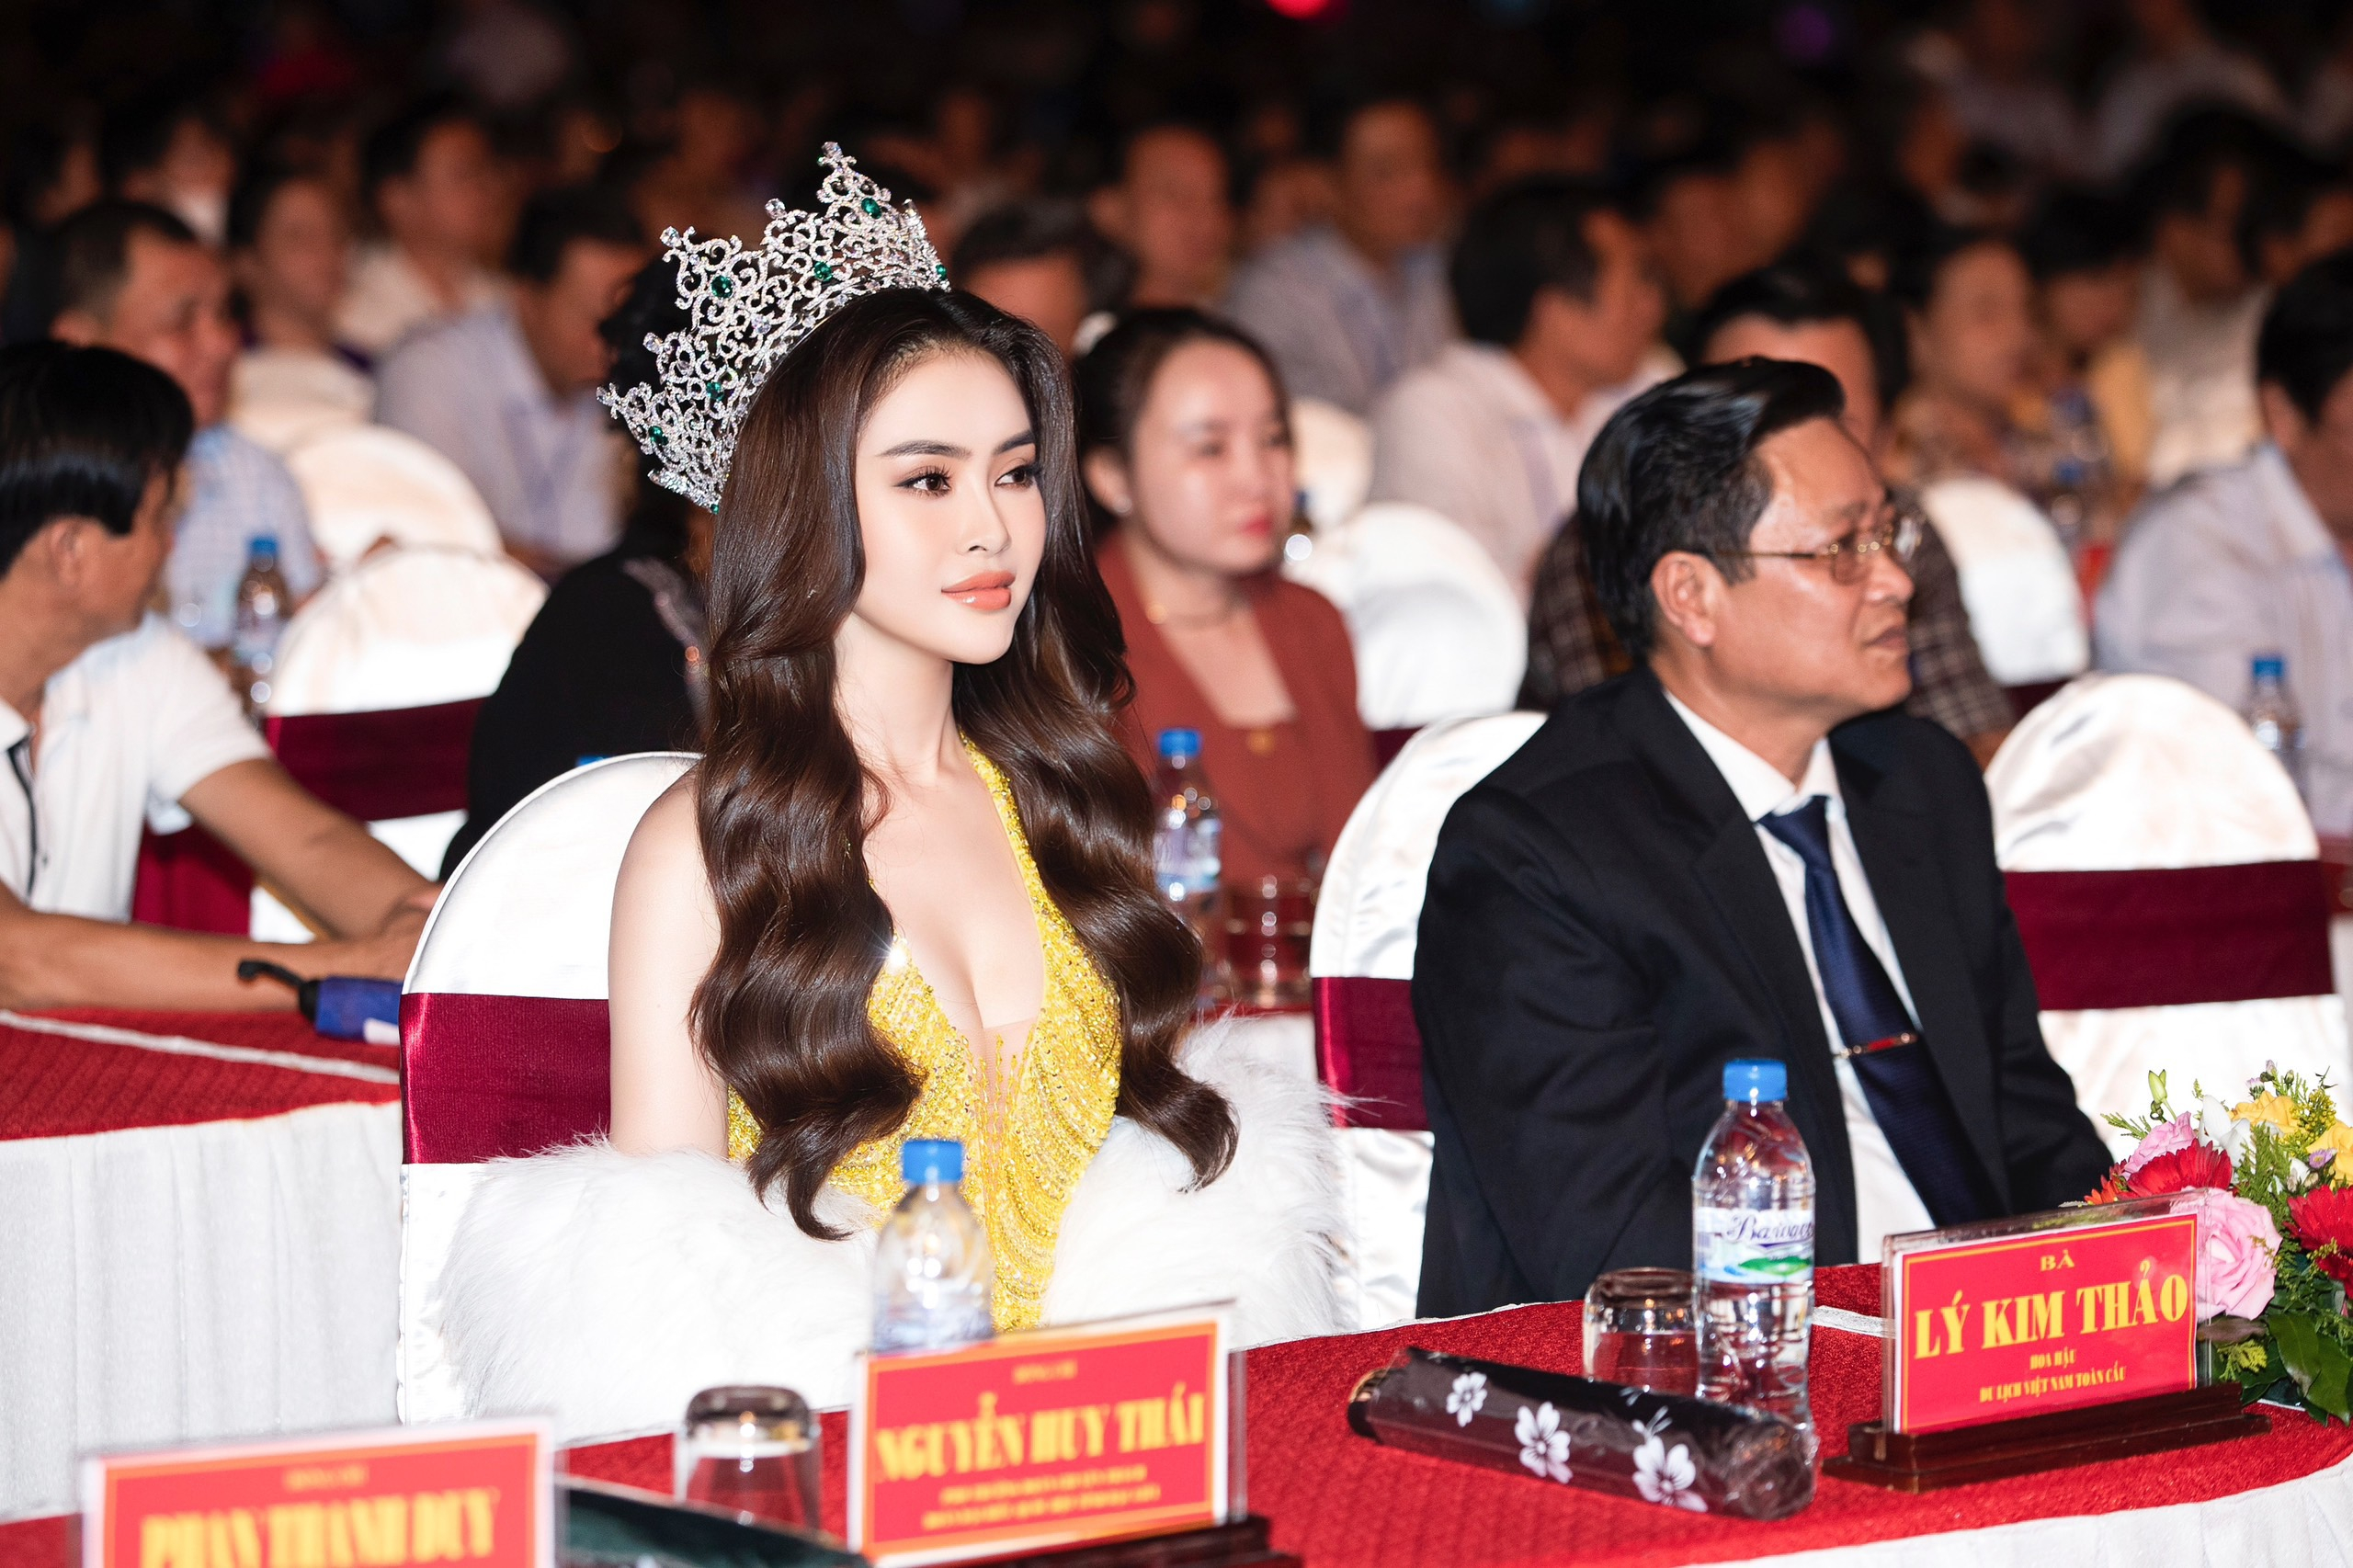 Hoa hậu Lý Kim Thảo - Hoa hậu Du lịch Việt Nam Toàn cầu 2022 tham dự và biểu diễn tại ngày hội. Được biết cô là người con của mãnh đất Bạc Liêu.